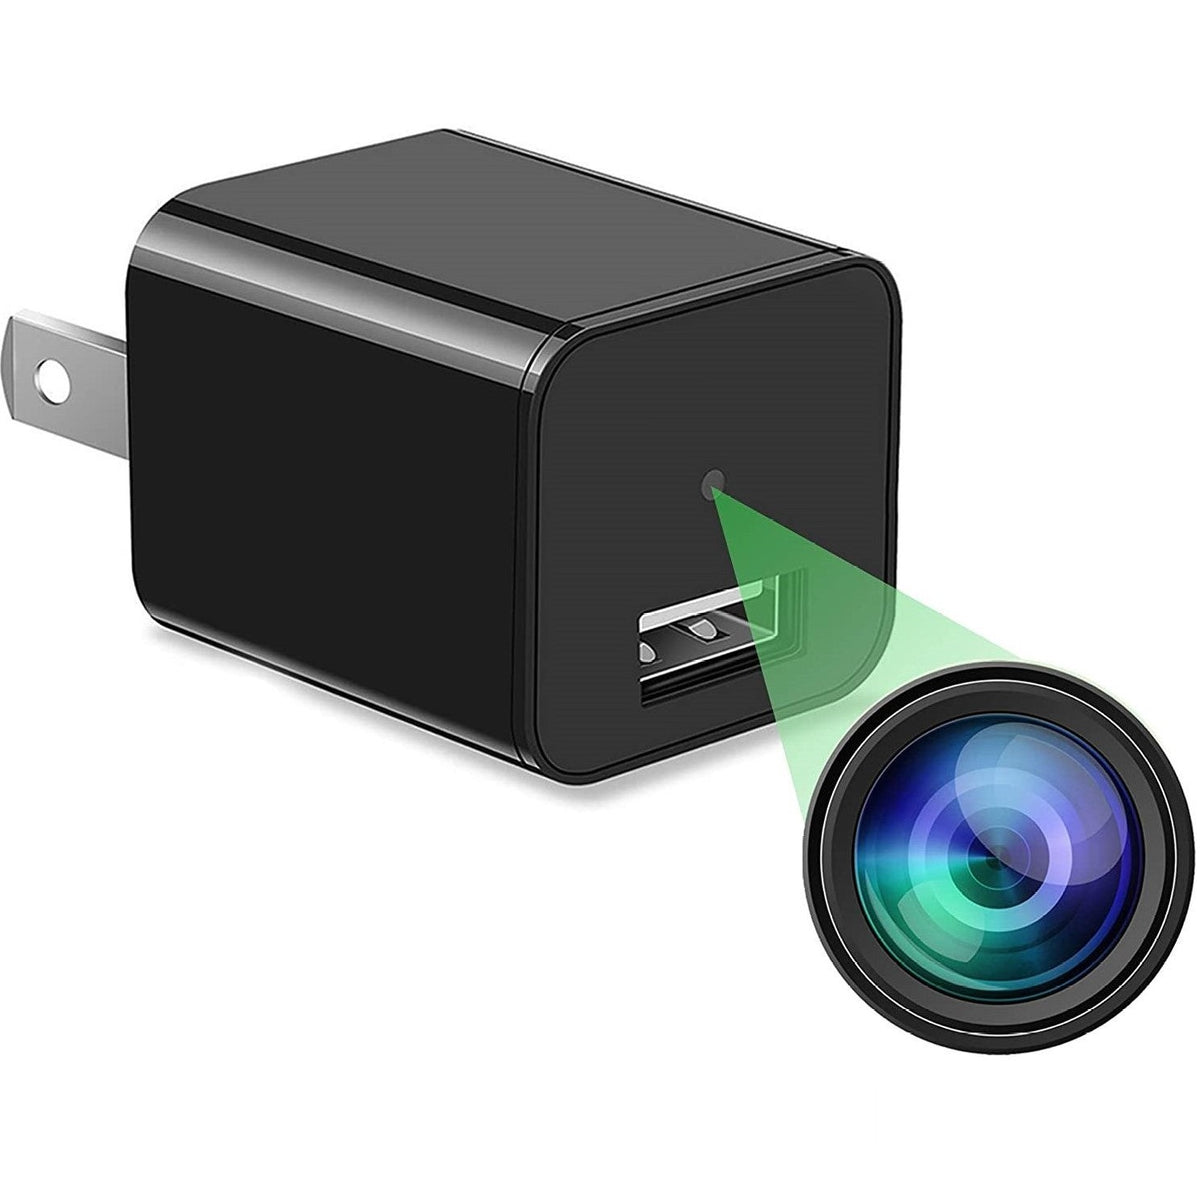 Spy Cameras - Buy Spy Cameras Online Starting at Just ₹189